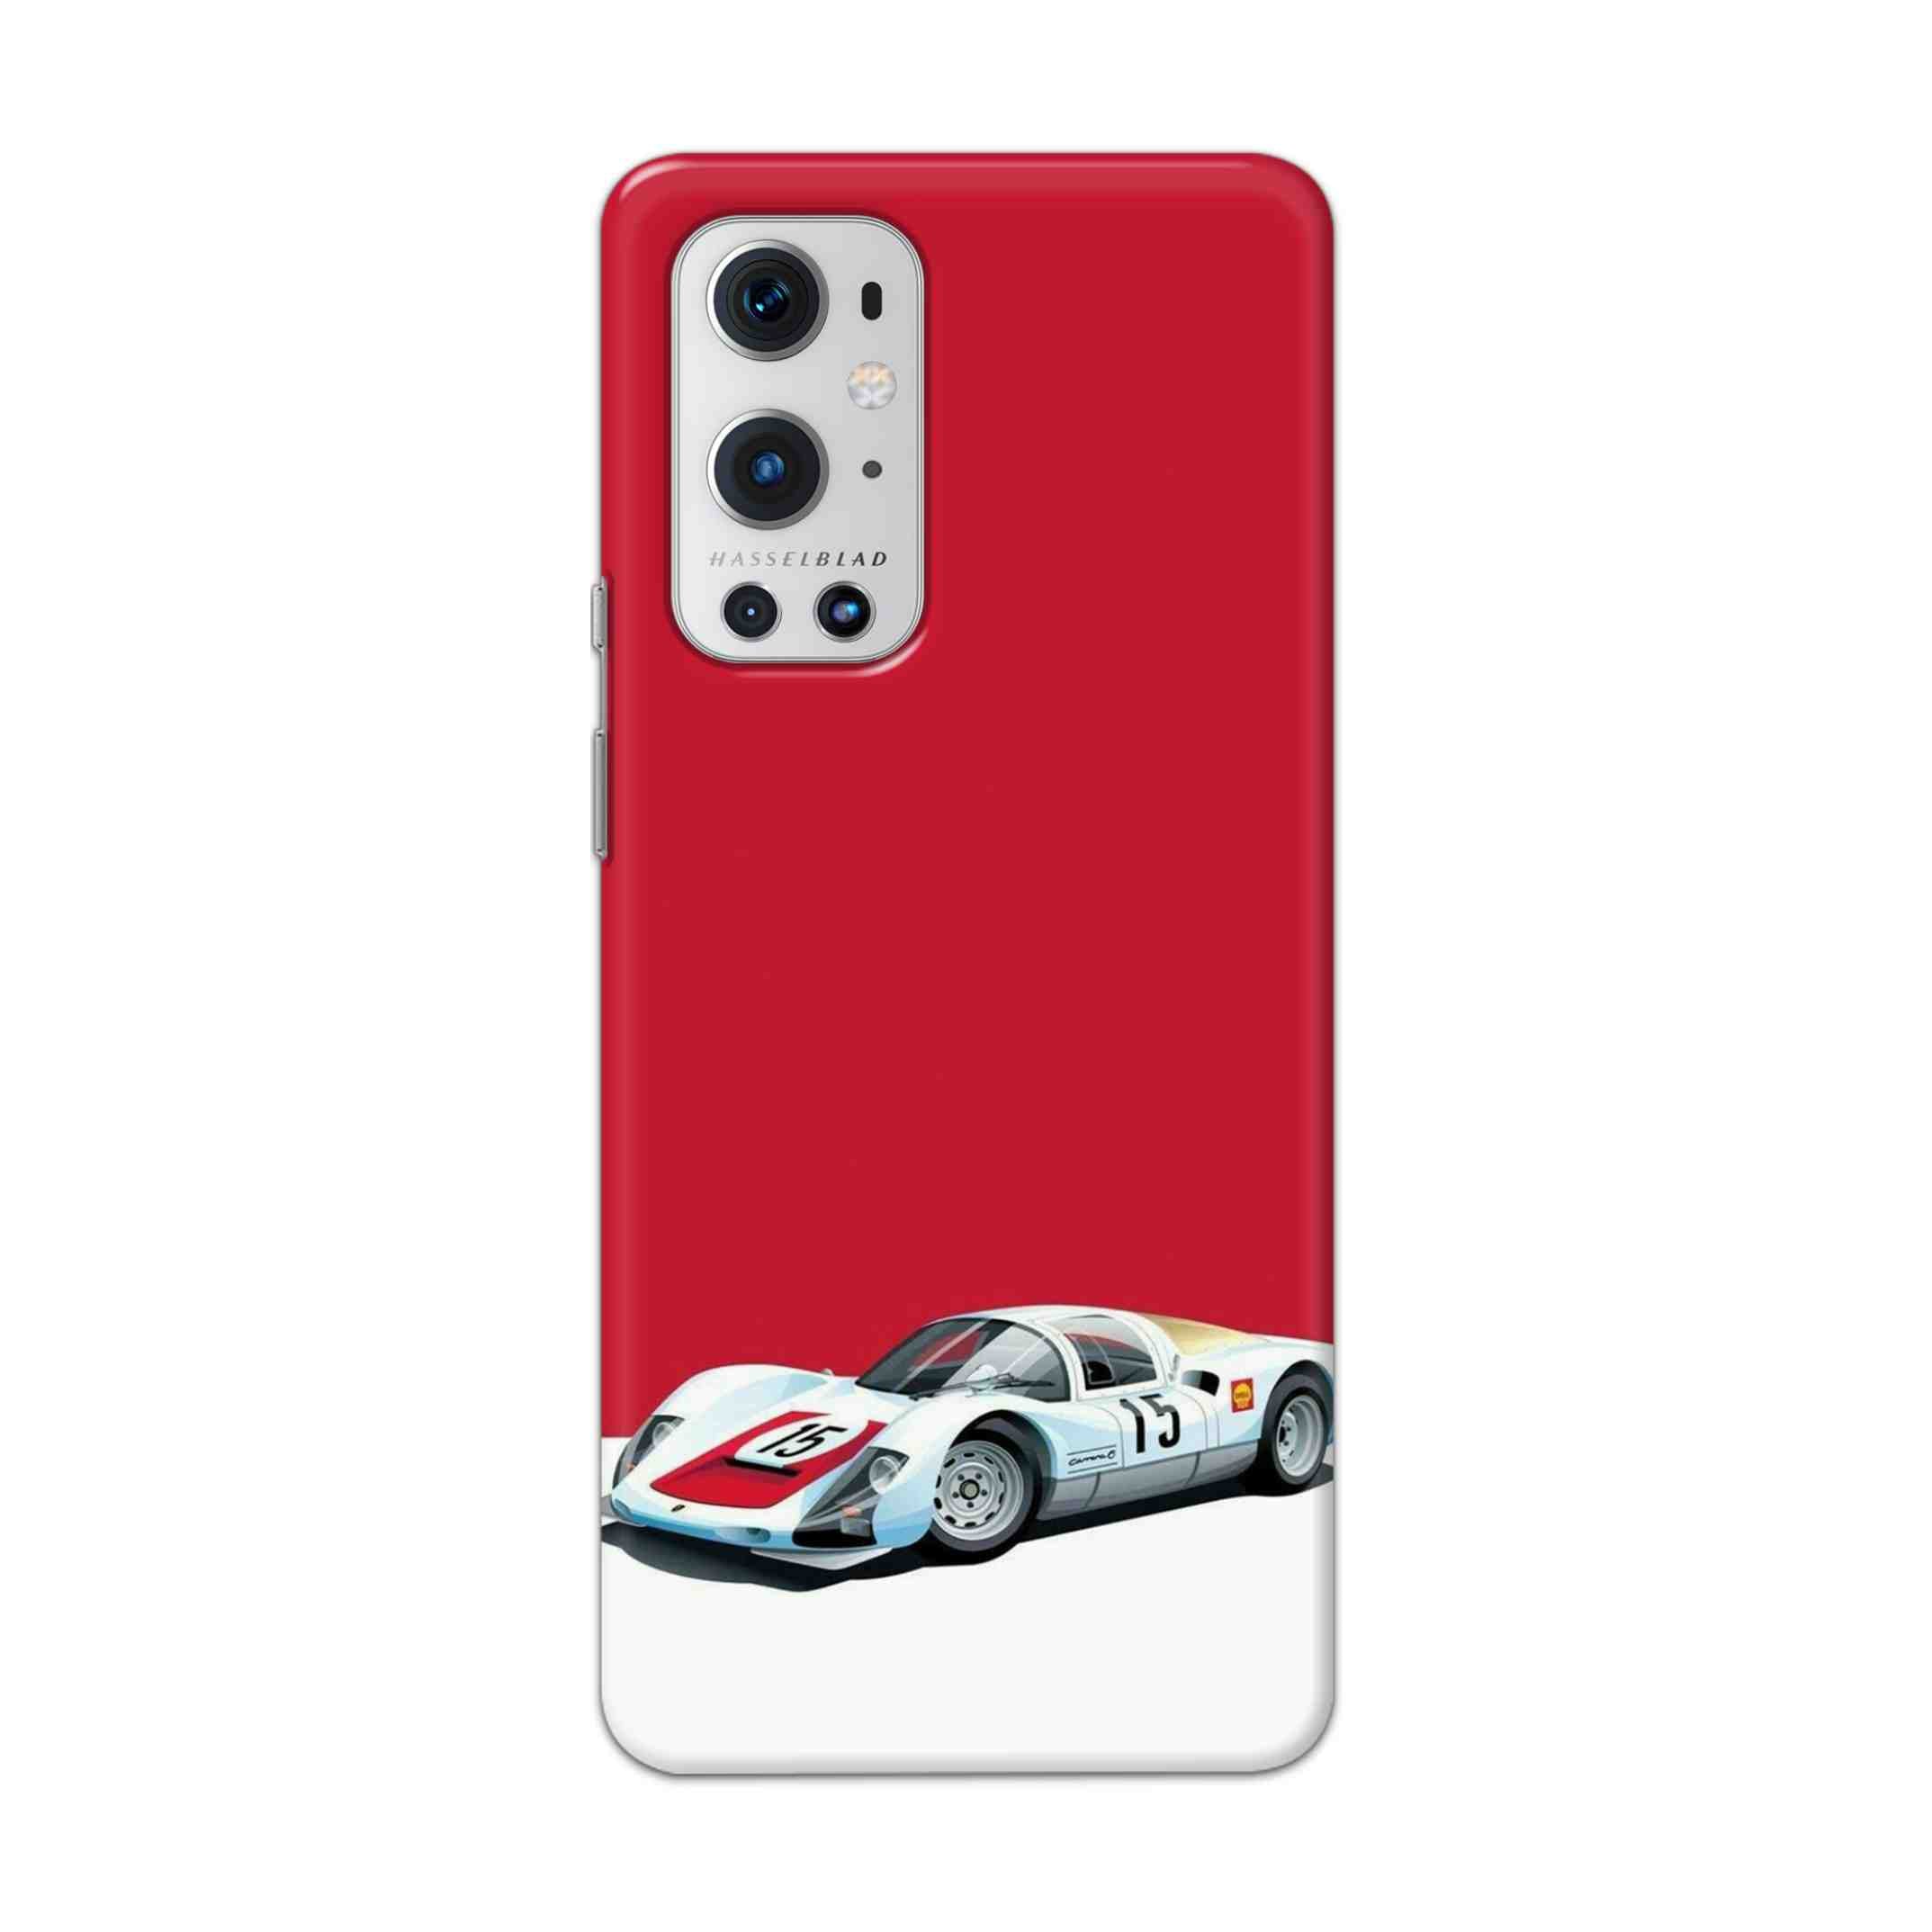 Buy Ferrari F15 Hard Back Mobile Phone Case Cover For OnePlus 9 Pro Online